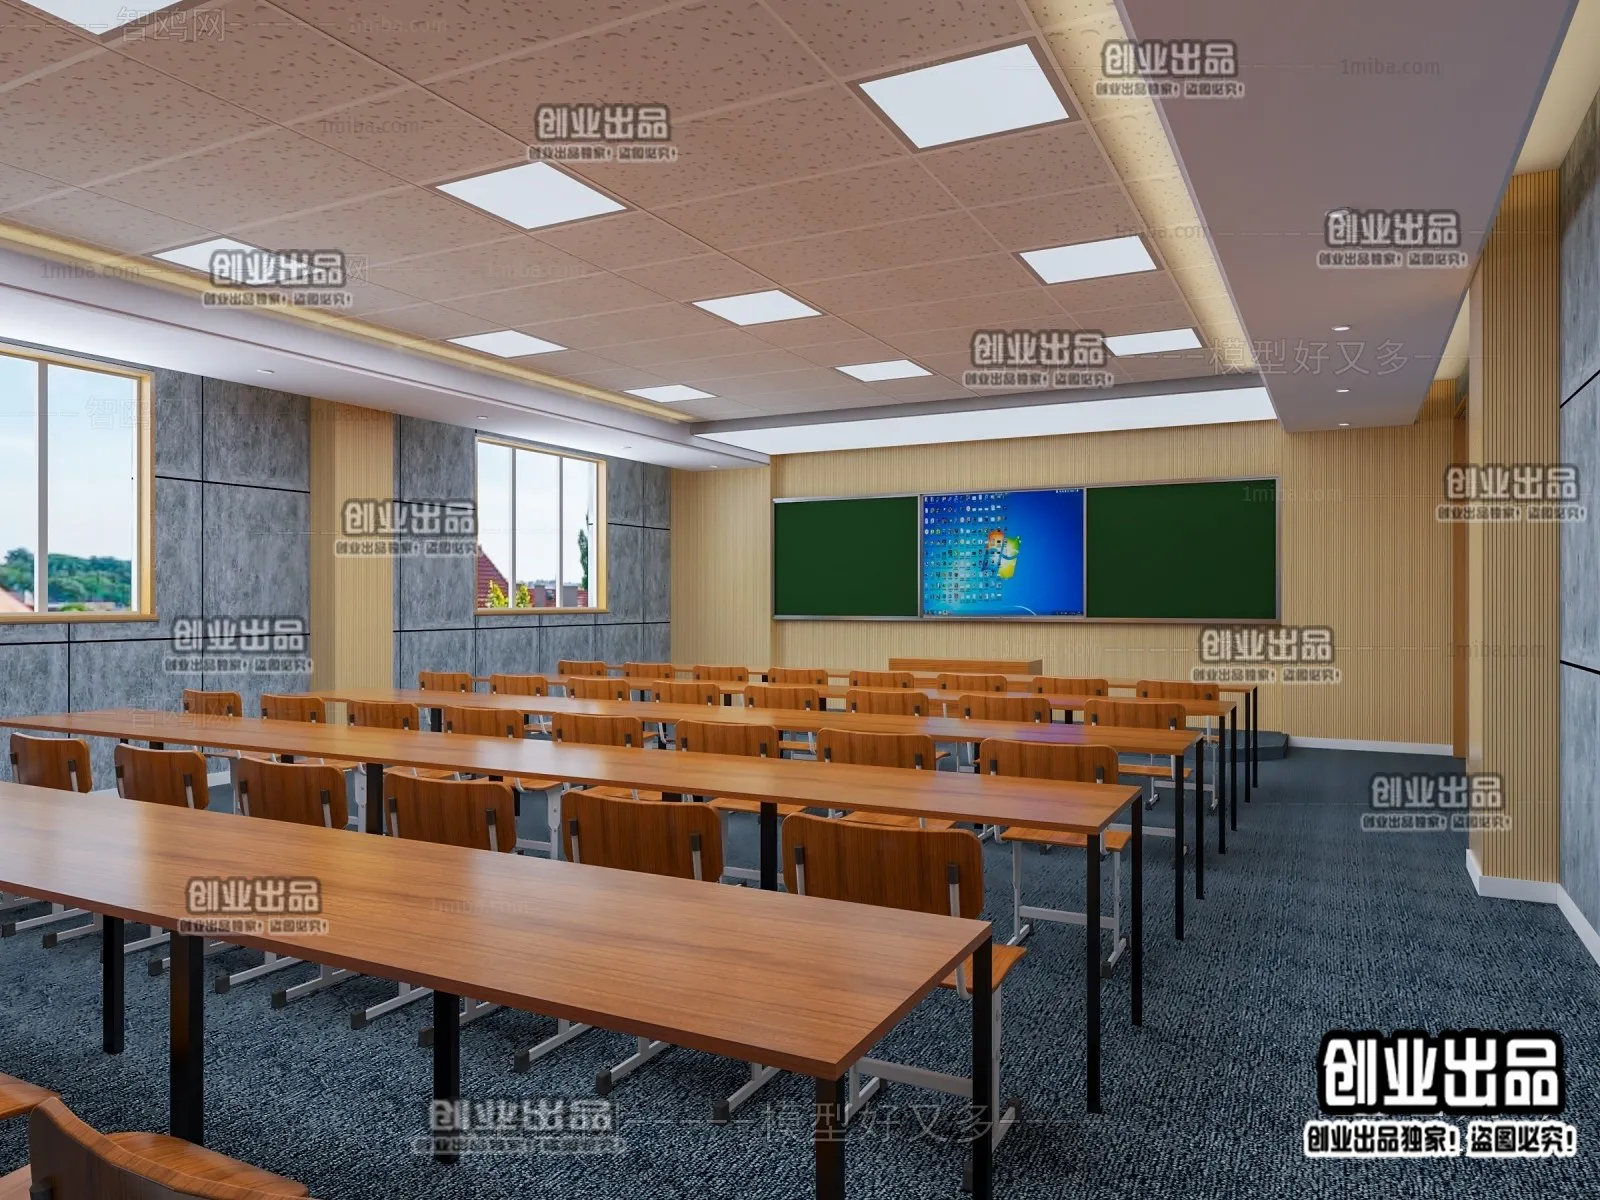 3D SCHOOL INTERIOR (VRAY) – CLASSROOM 3D SCENES – 026